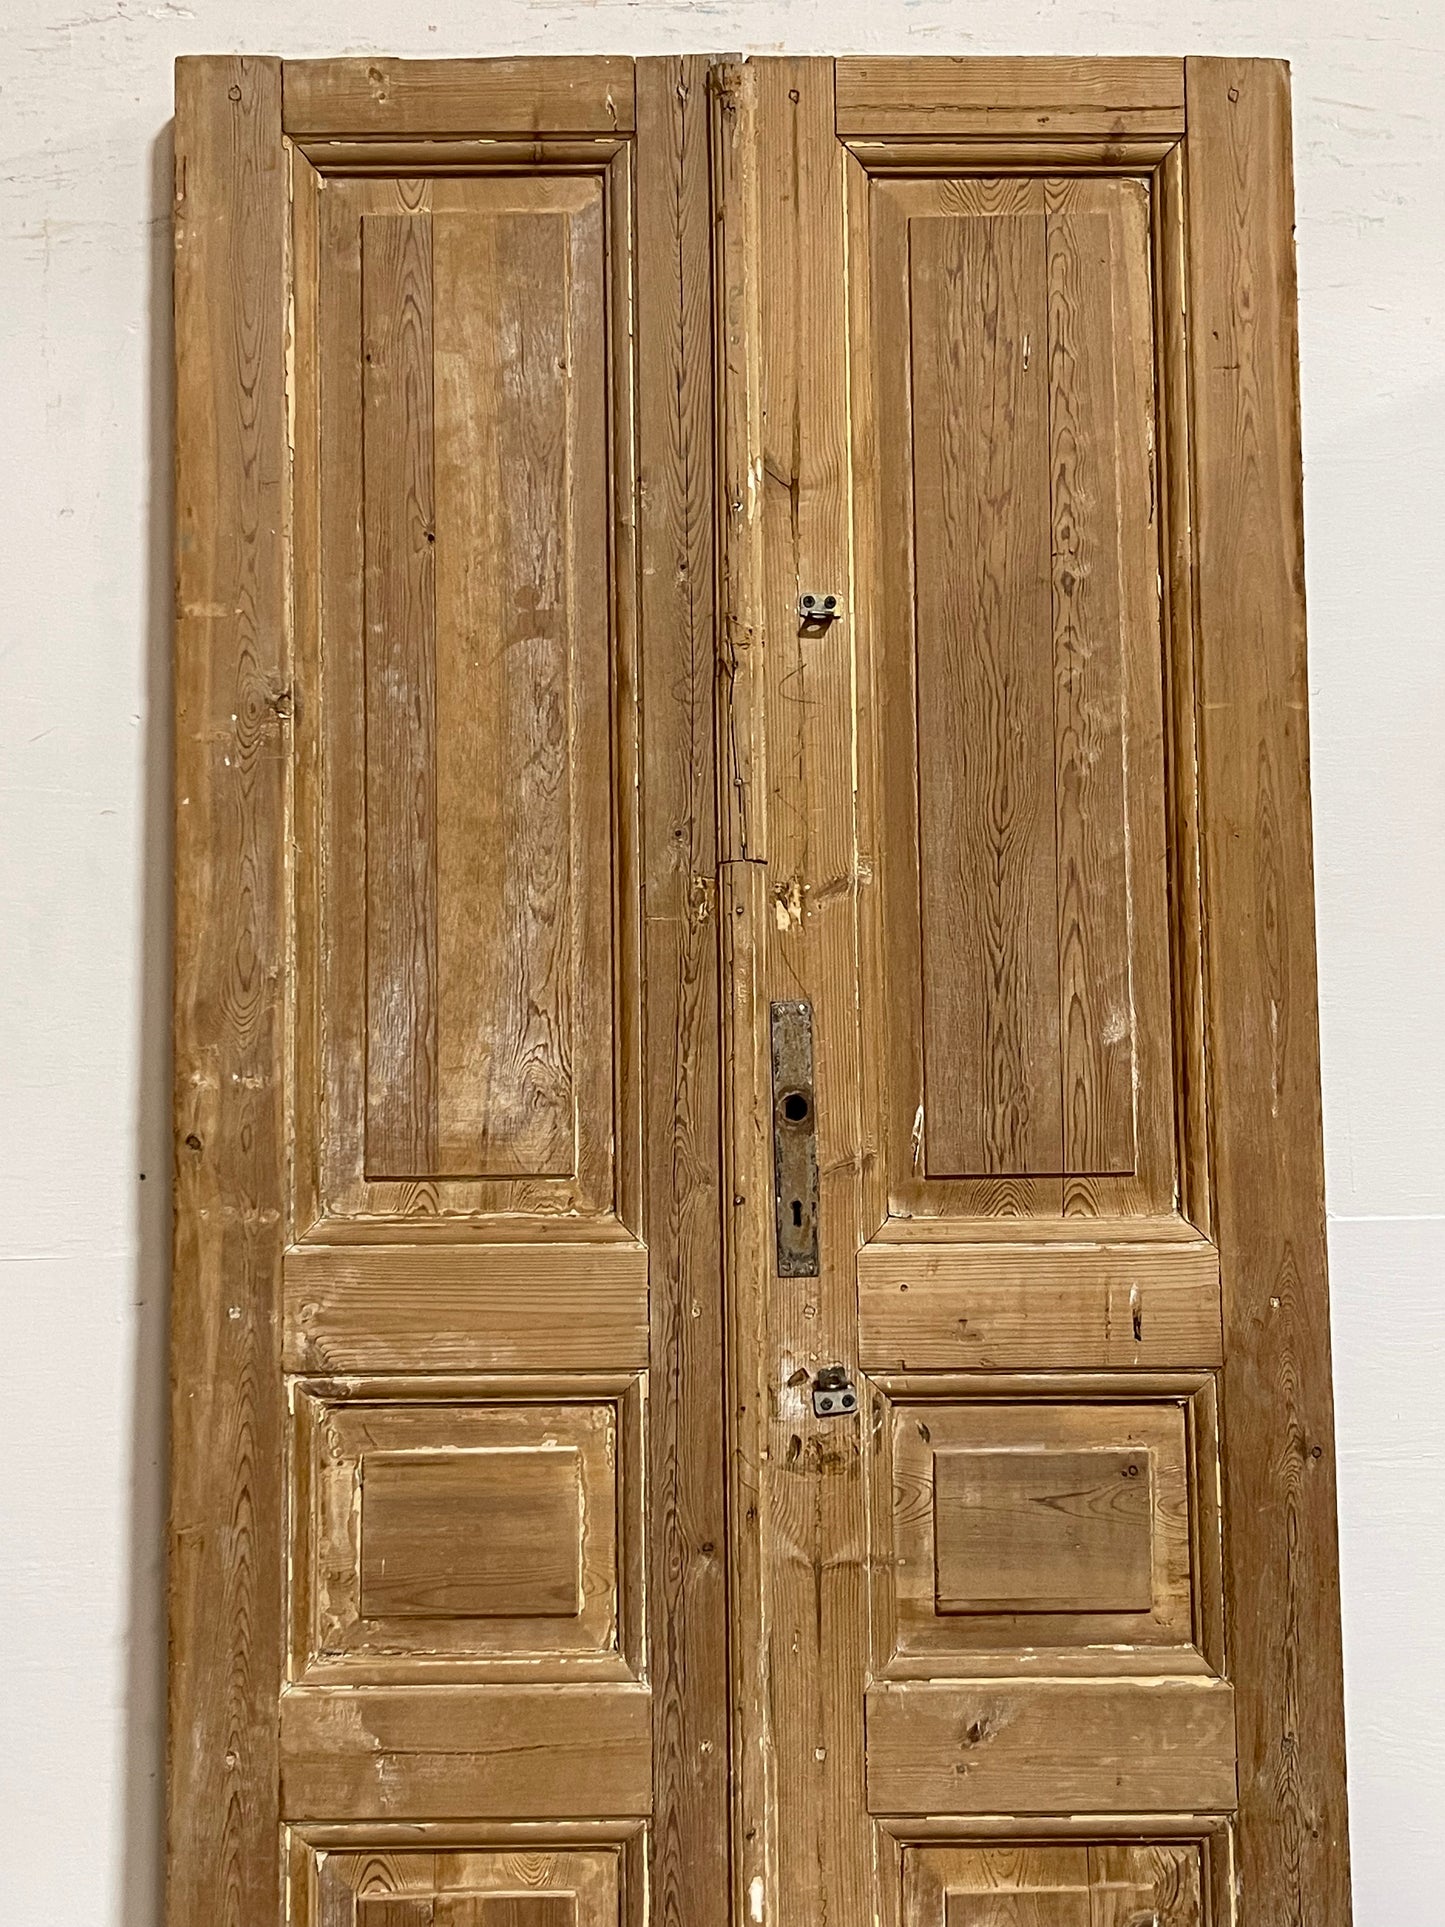 Antique French panel Doors (83.25x33.75) J639